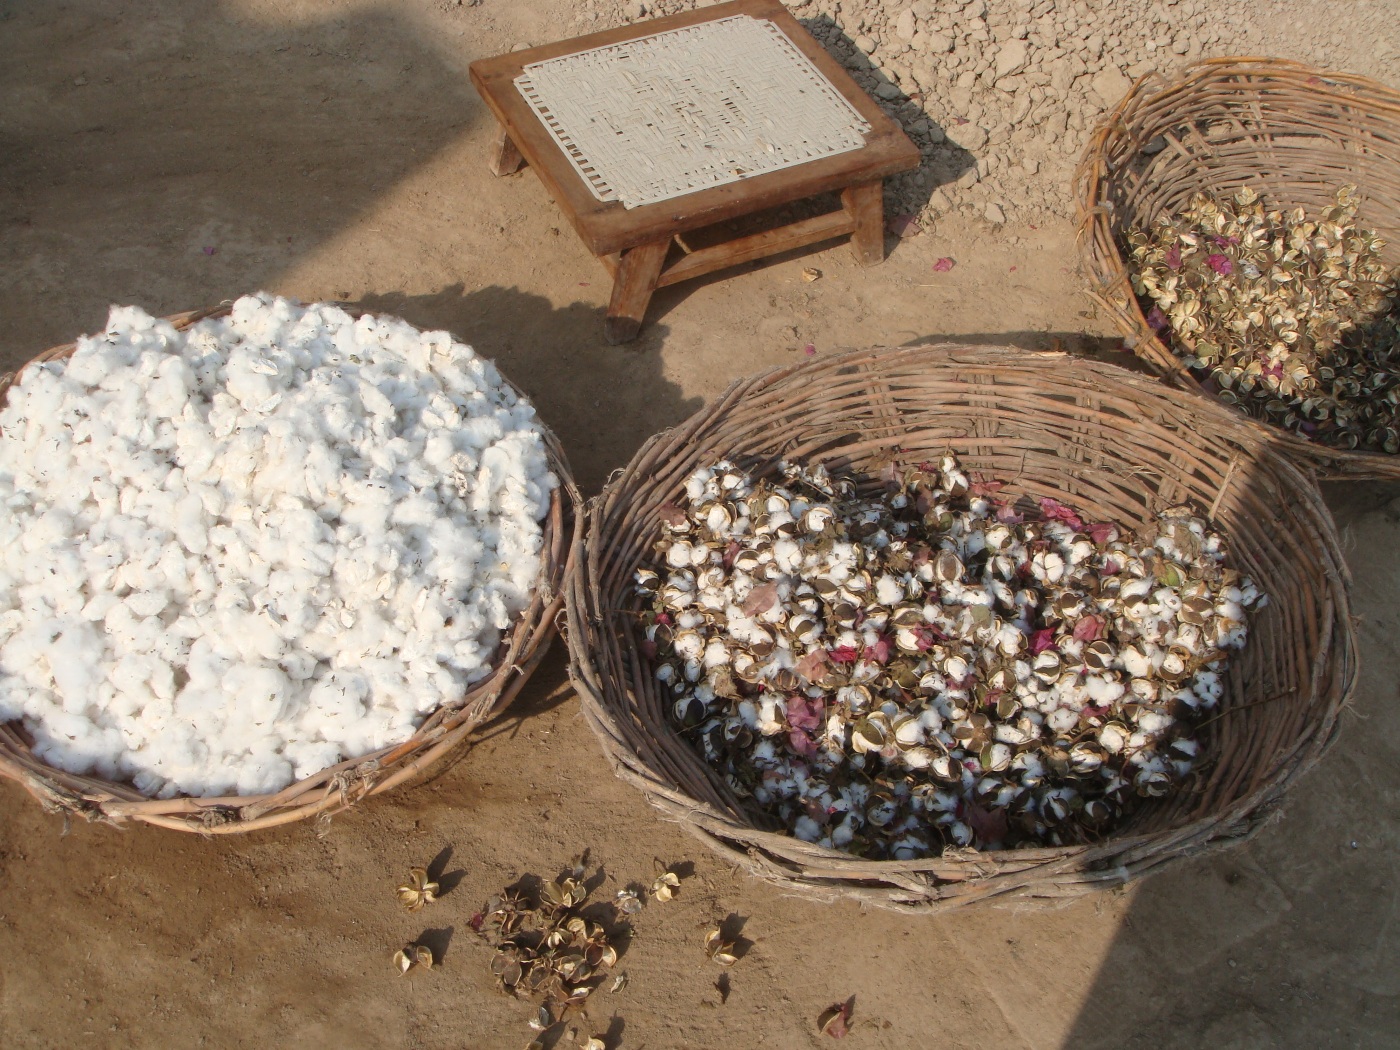 Cotton crops photo